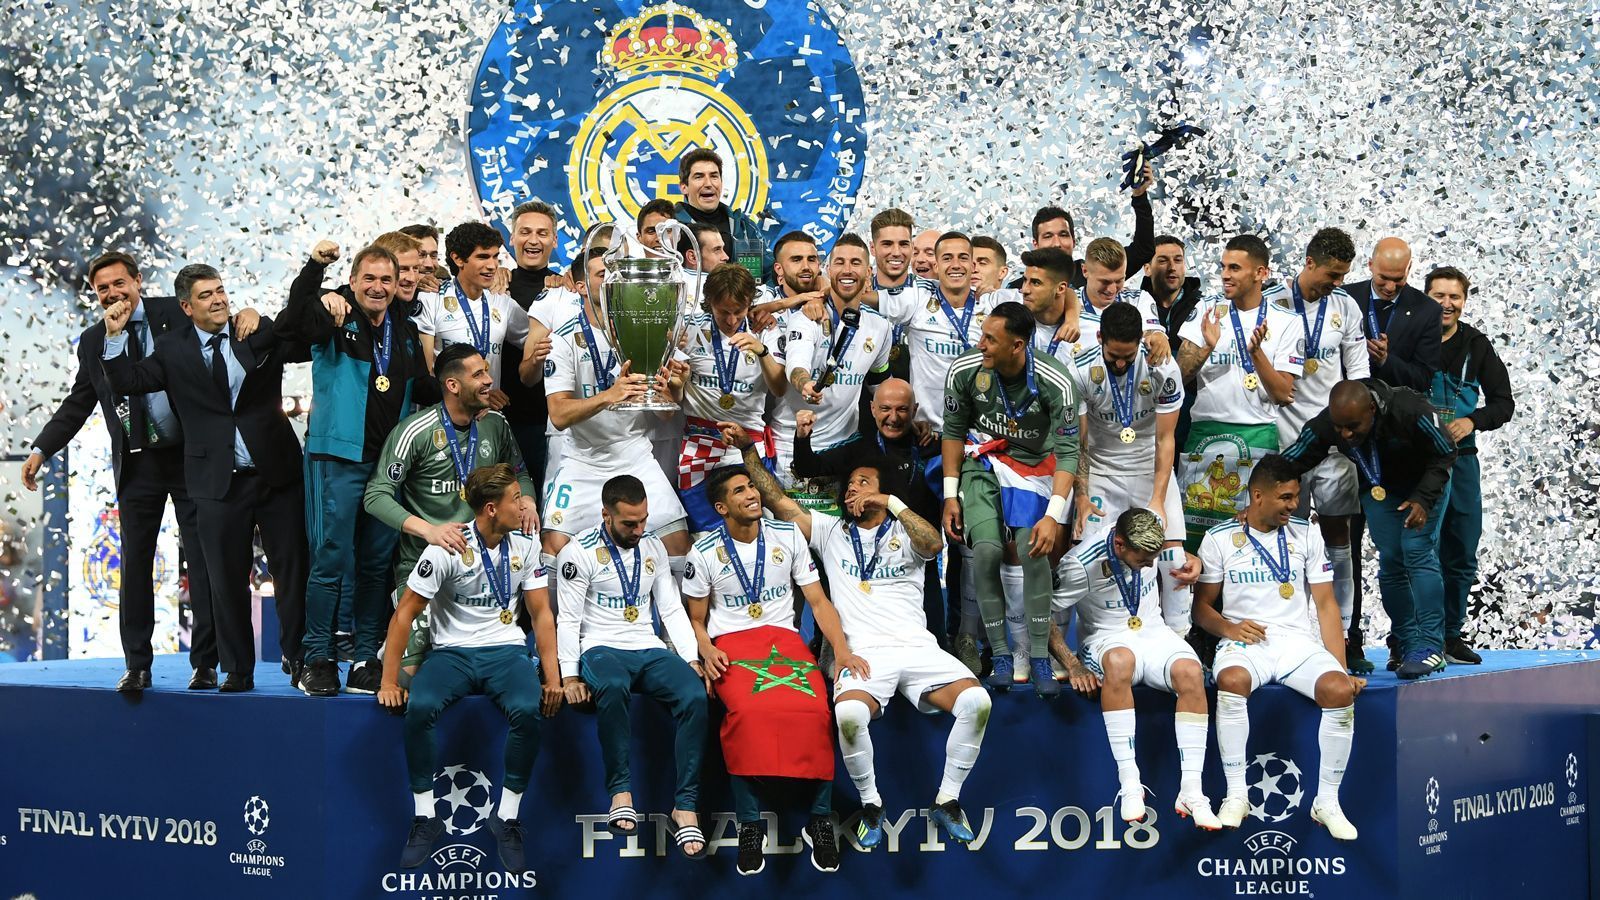 
                <strong>Champions League</strong><br>
                Der wichtigste Klubwettbewerb, den die UEFA derzeit austrägt, ist die Champions League. Seit 1992 trägt die "Königsklasse" diesen Namen, zuletzt wurde sie zugunsten der europäischen Topklubs noch einmal modifiziert. So sind nun jeweils vier Vertreter der Top-Nationen Spanien, England, Italien und Deutschland automatisch für die Gruppenphase (mit insgesamt 32 Teams) qualifiziert. Zuletzt sorgte der Titelträger Real Madrid für Aufsehen. Die Spanier waren nicht nur die erste Mannschaft, die den Henkelpott zwei Mal in Folge gewinnen konnte, sondern stellte in diesem Jahr mit drei Champions-League-Titeln in Serie einen Rekord auf, der noch lange Bestand haben dürfte. 1993 war übrigens Olympique Marseille mit Rudi Völler erster Sieger der Champions League.
              